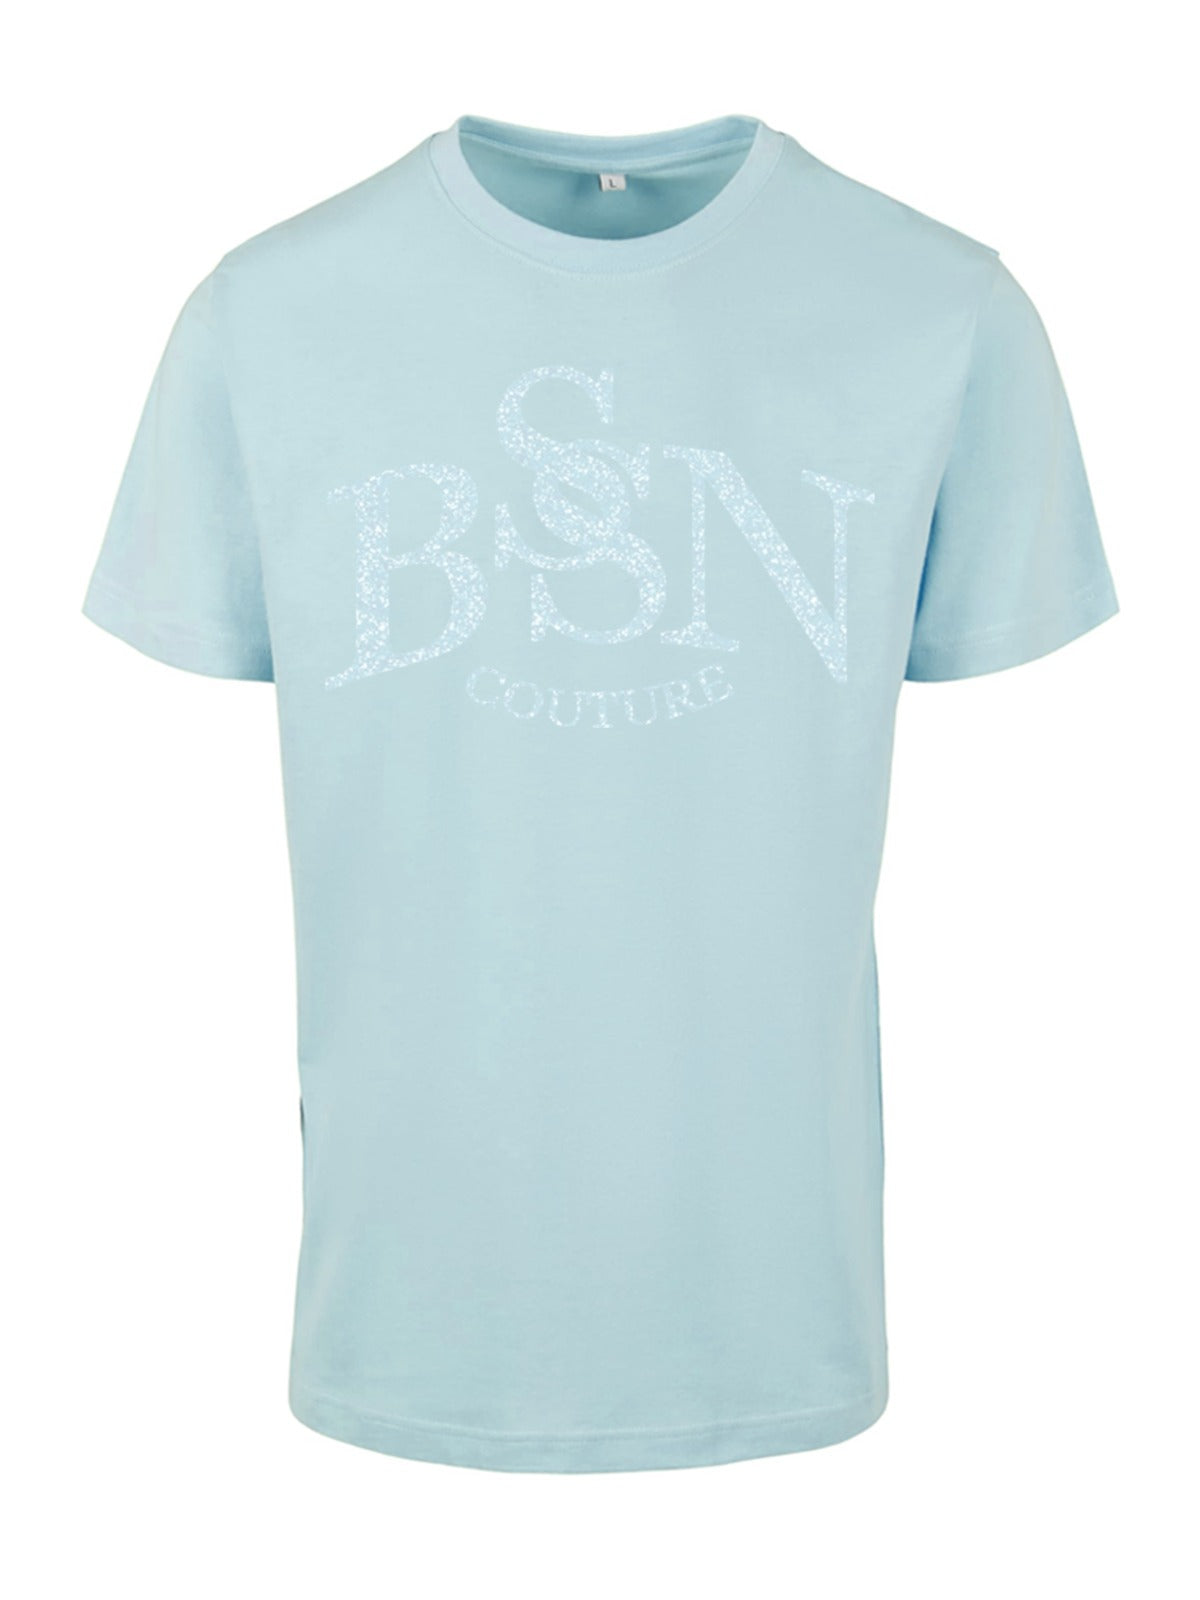 BSN COUTURE shirt - Blue